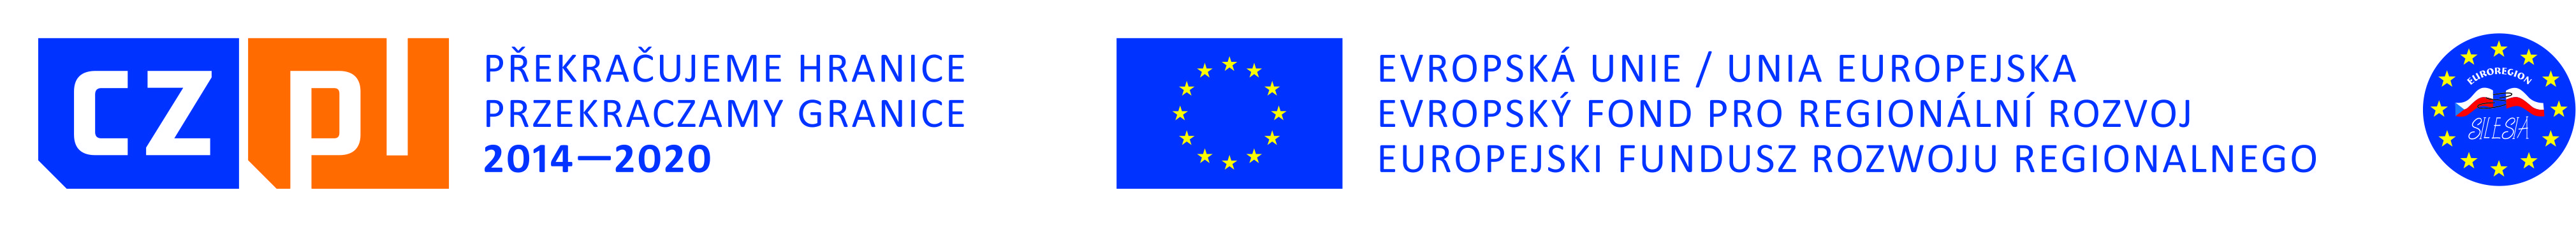 logo_cz_pl_eu_ers.[1]